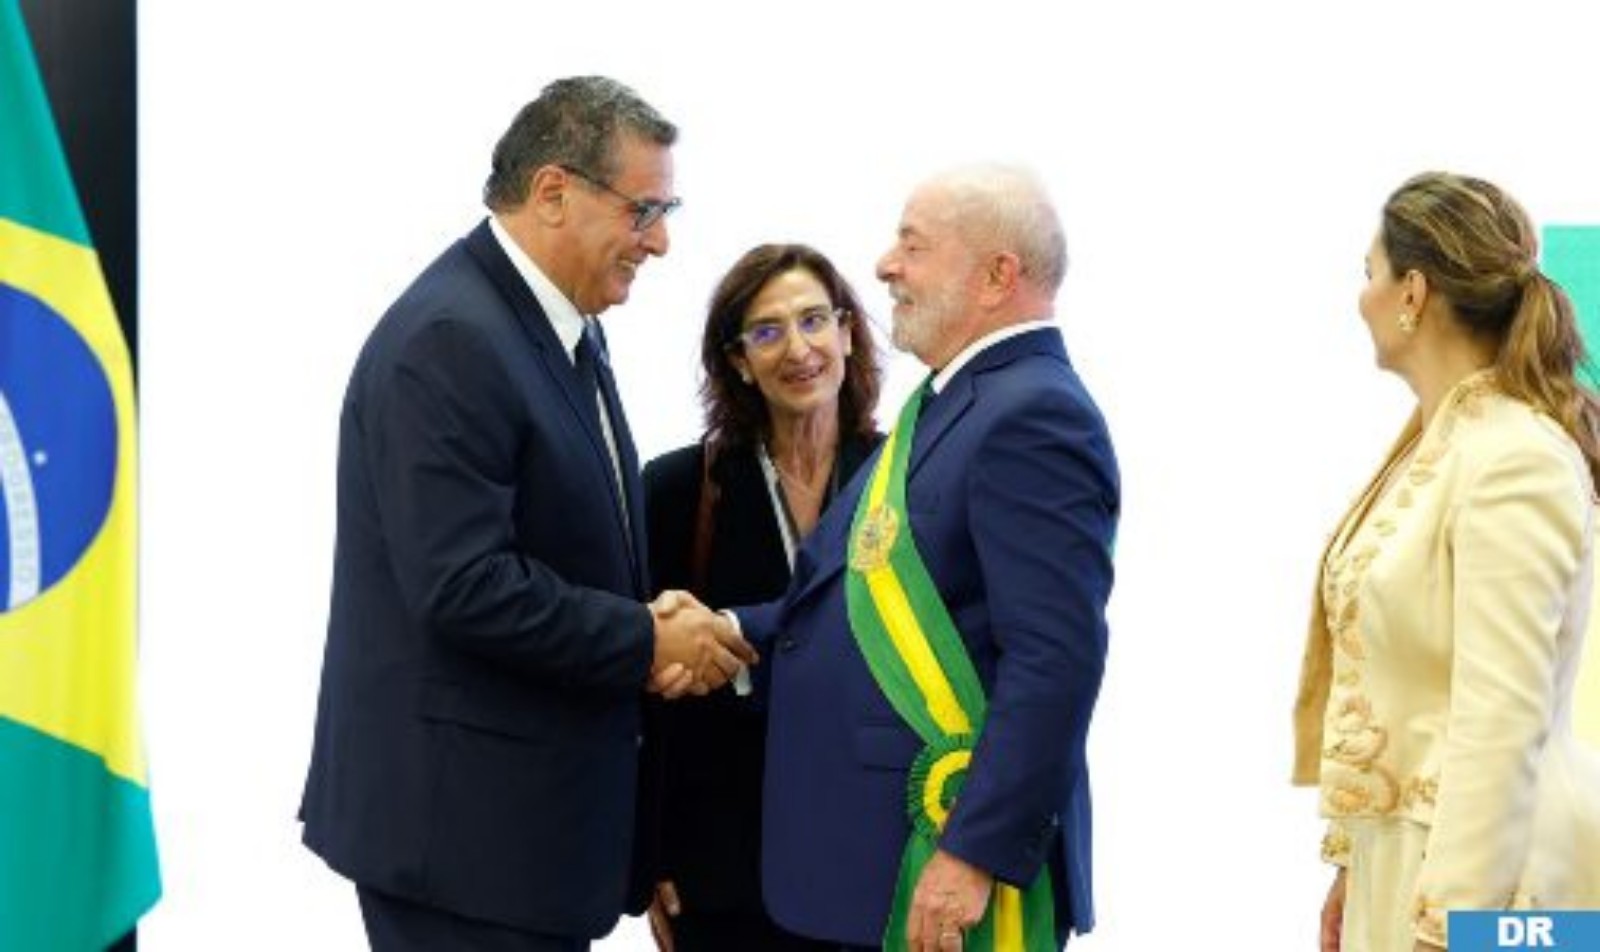 السيد أخنوش يمثل جلالة الملك في حفل تنصيب الرئيس البرازيلي